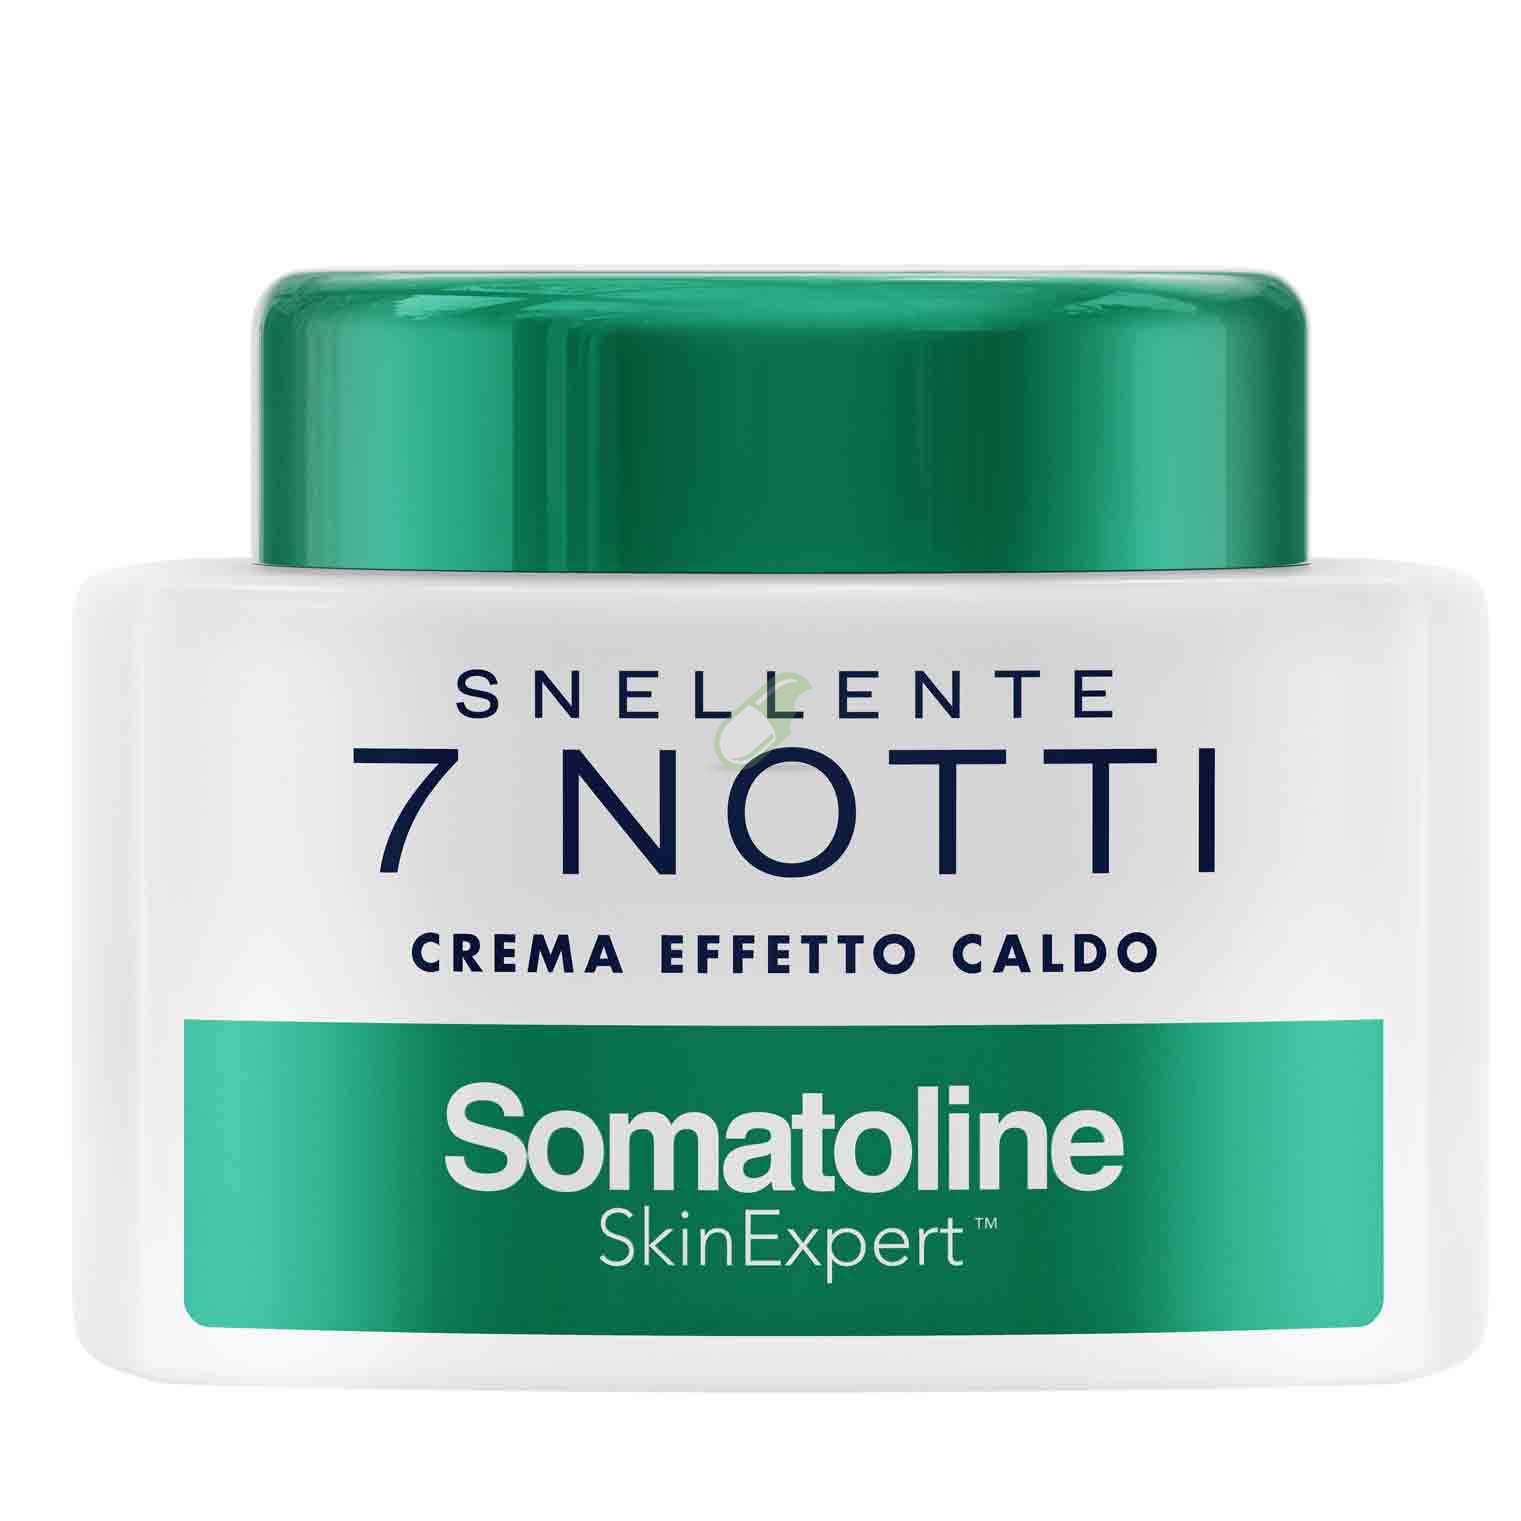 Somatoline Skin Expert Trattamento Snellente 7 Notti Crema Effetto Caldo 250 ml